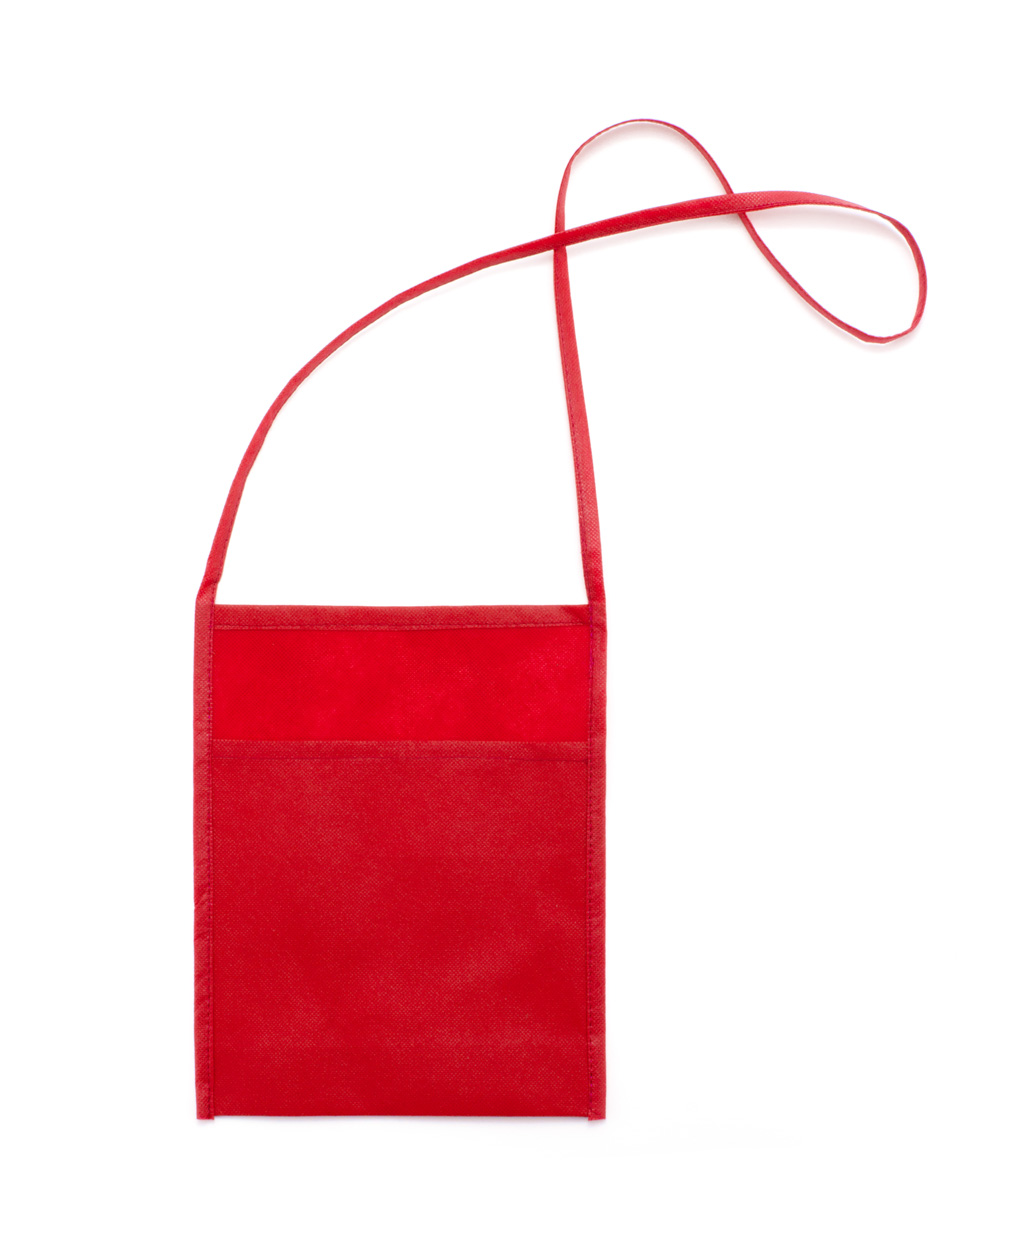 Promo  Yobok multipurpose bag